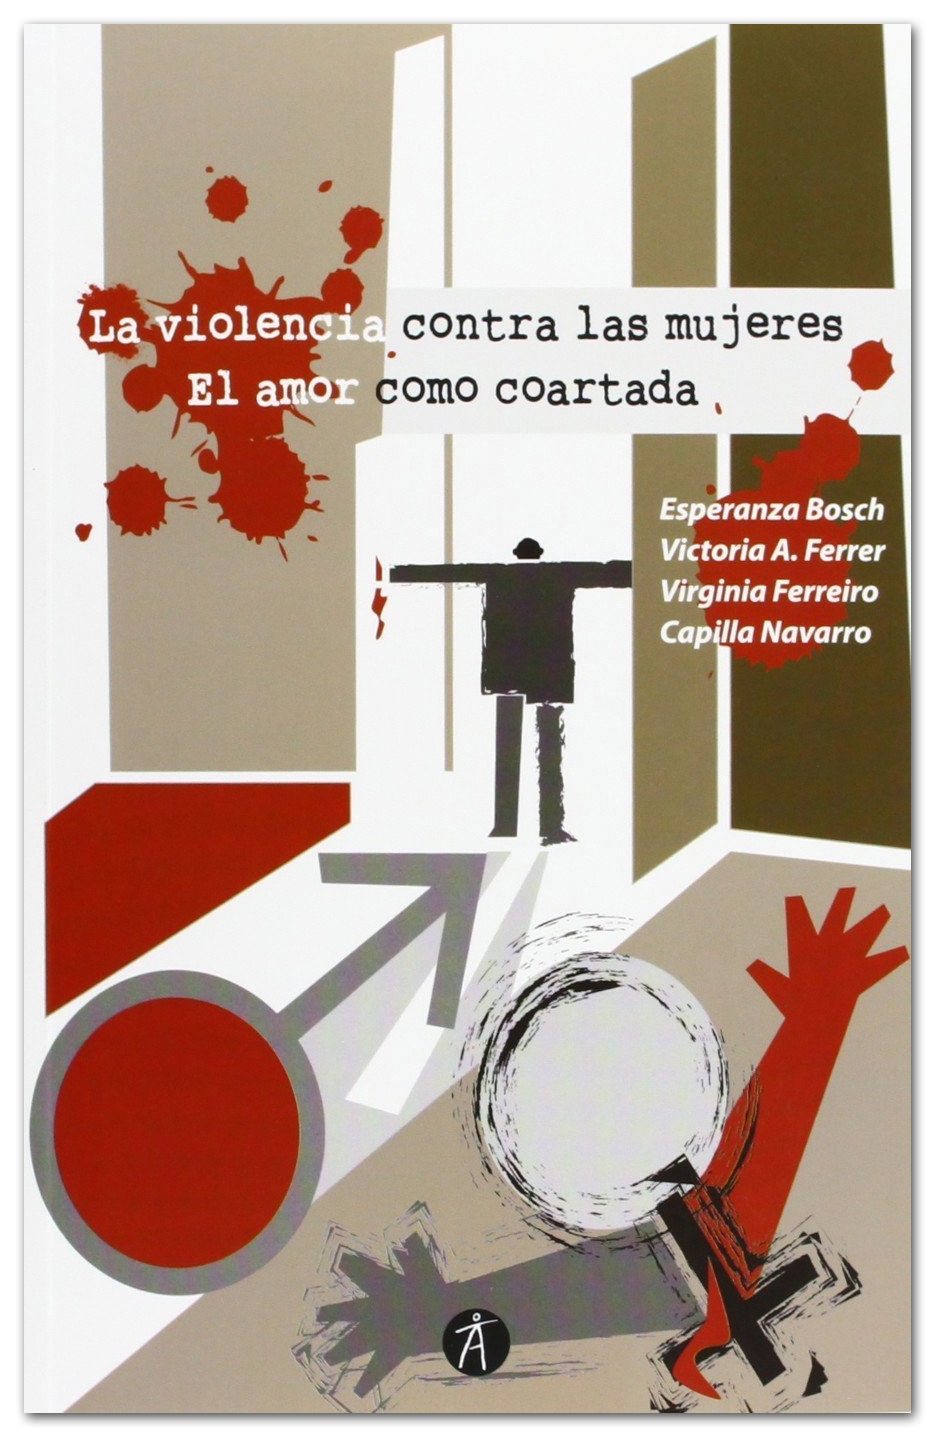 La violencia contra las mujeres. El amor como coartada - Esperanza Bosch et al.